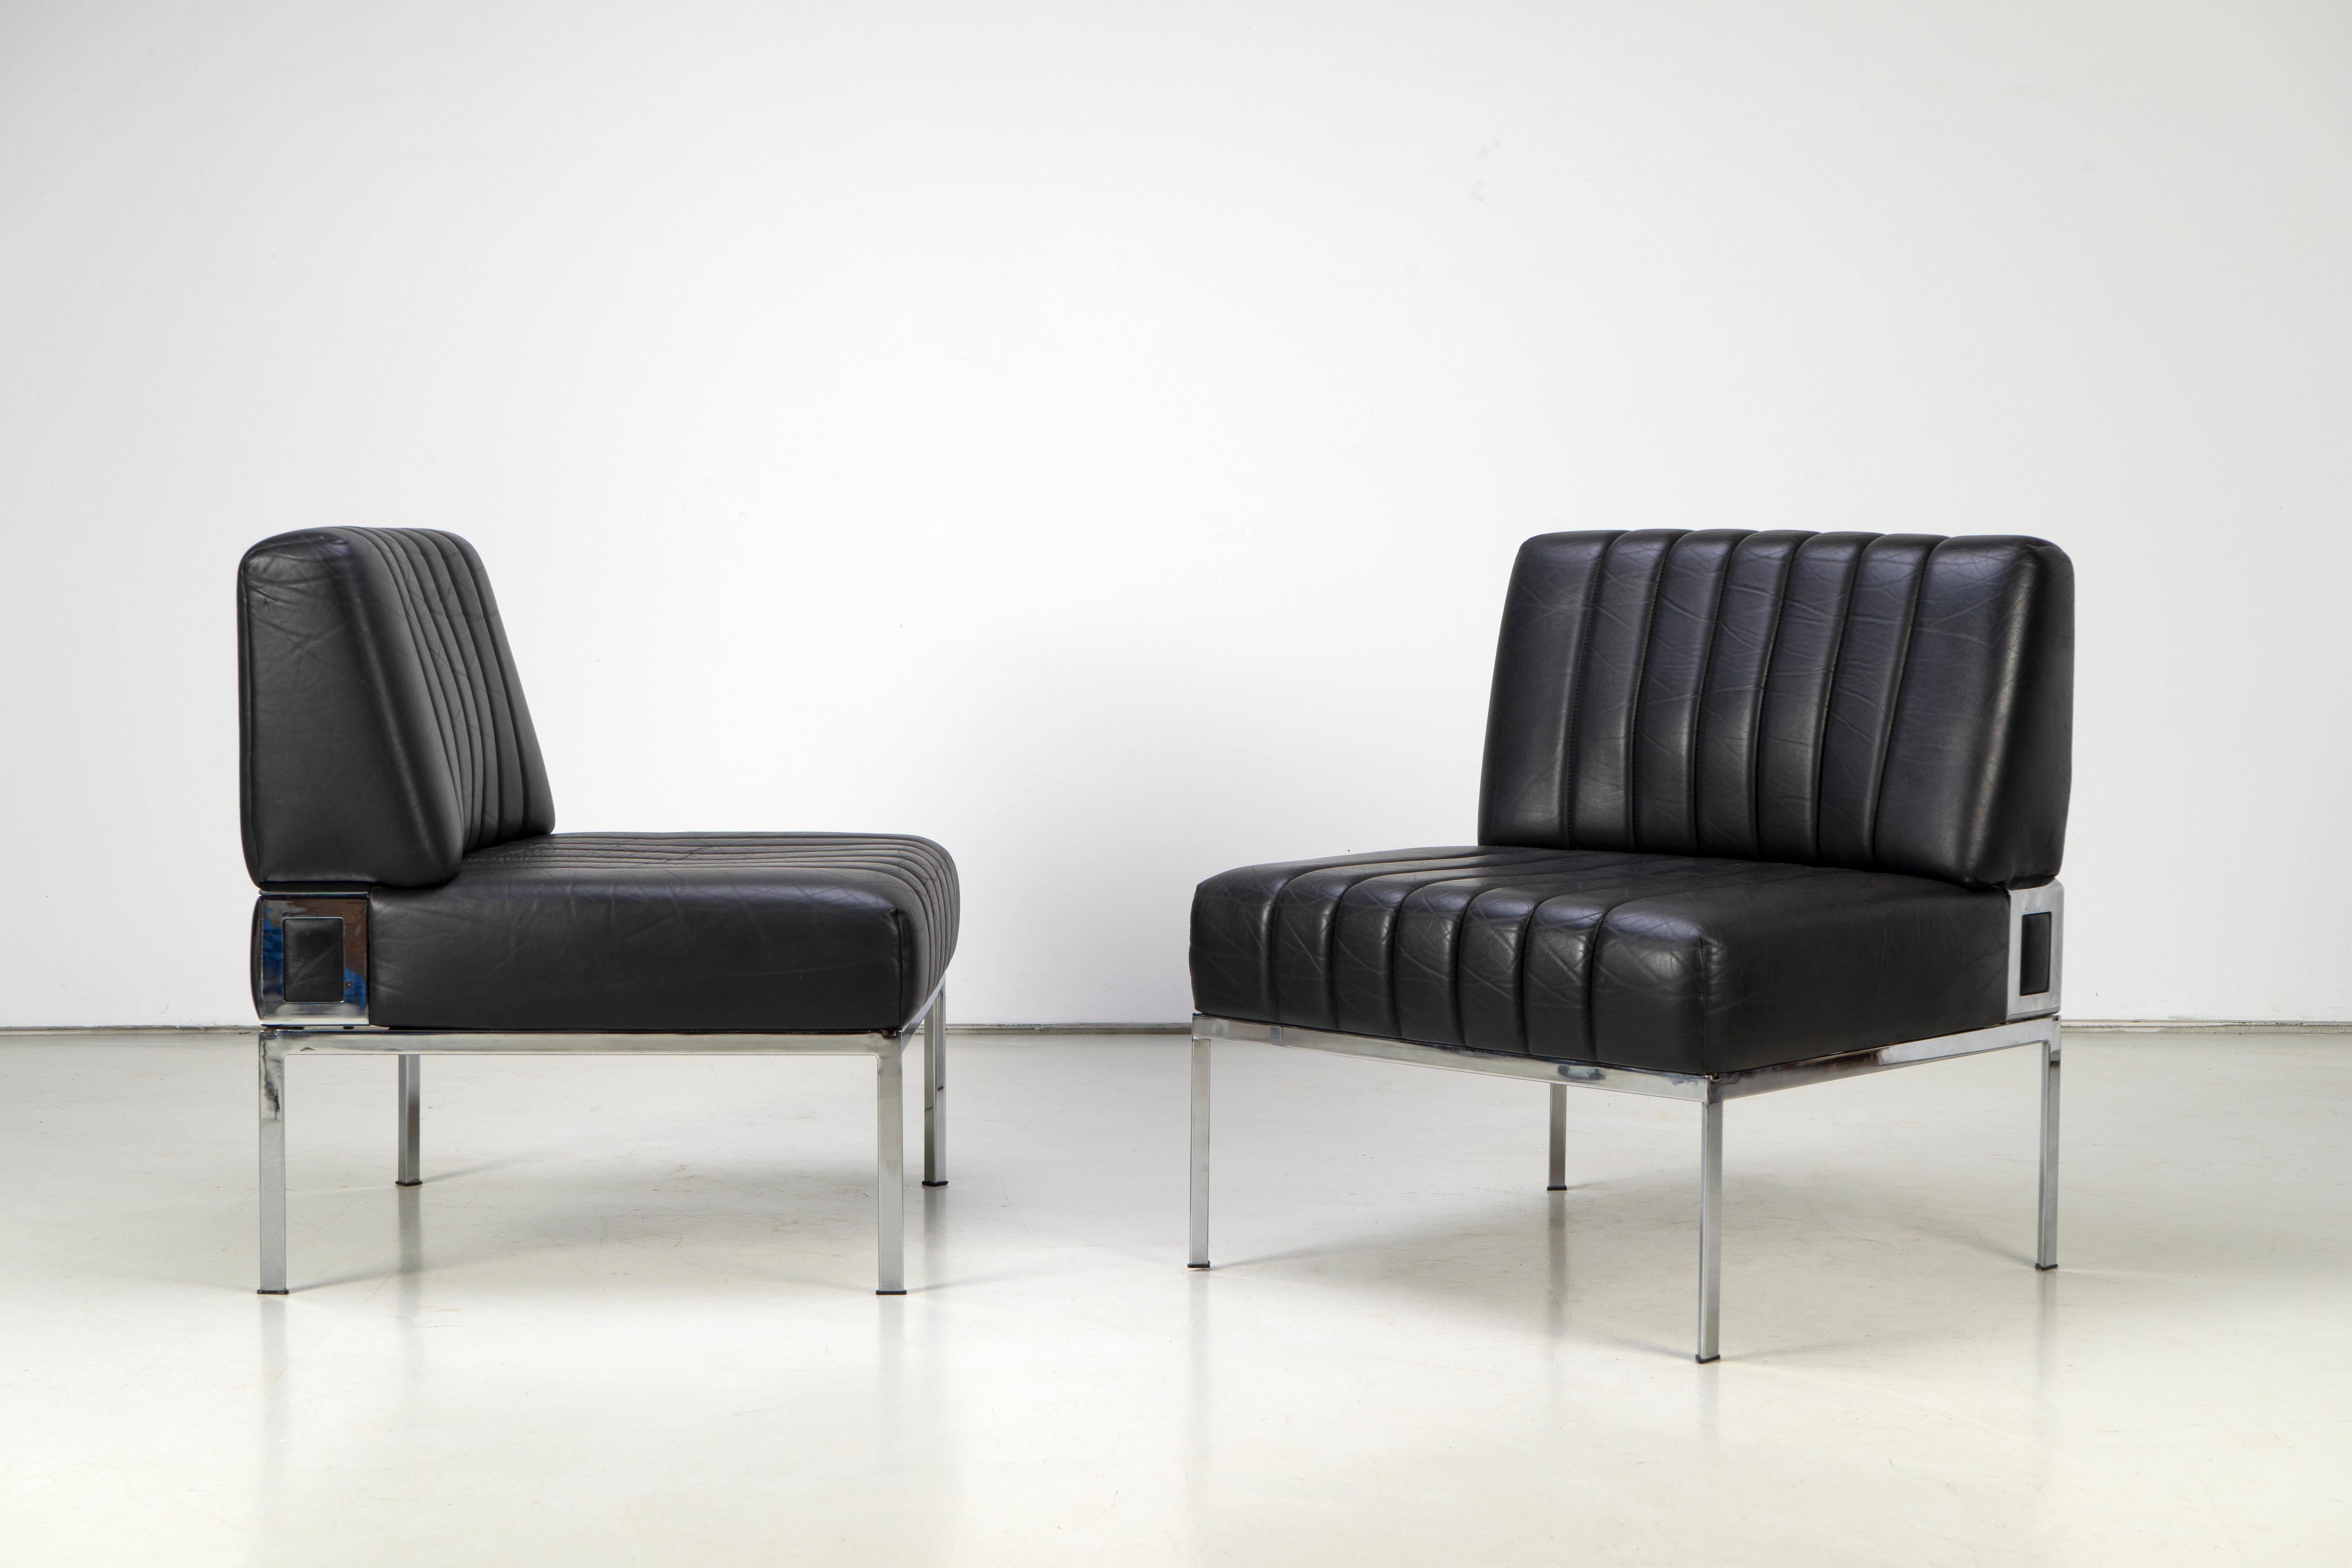 Quatre fauteuils de salon de style Mid-Century-Modern en cuir noir et cadres chromés. Ces chaises ont été produites par la société allemande Stoll Giroflex dans les années 1970 et sont en très bon état. Ils sont disponibles individuellement ou sous